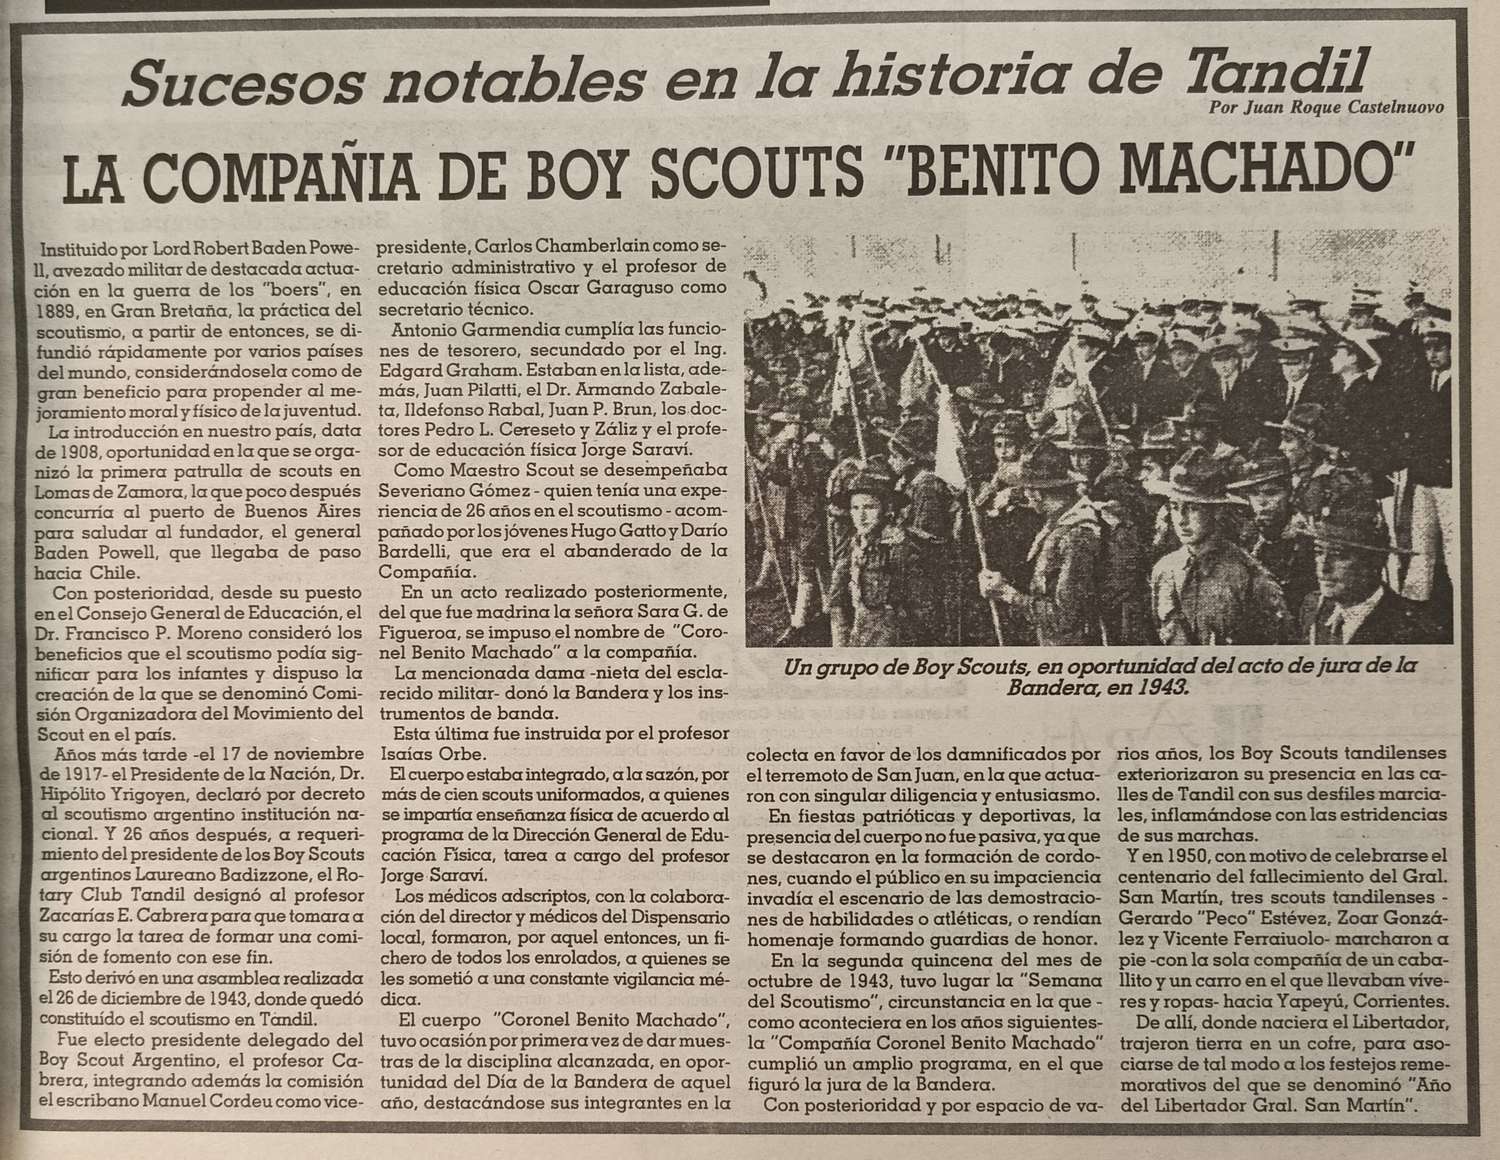 La compañía de Boy Scouts "Benito Machado"